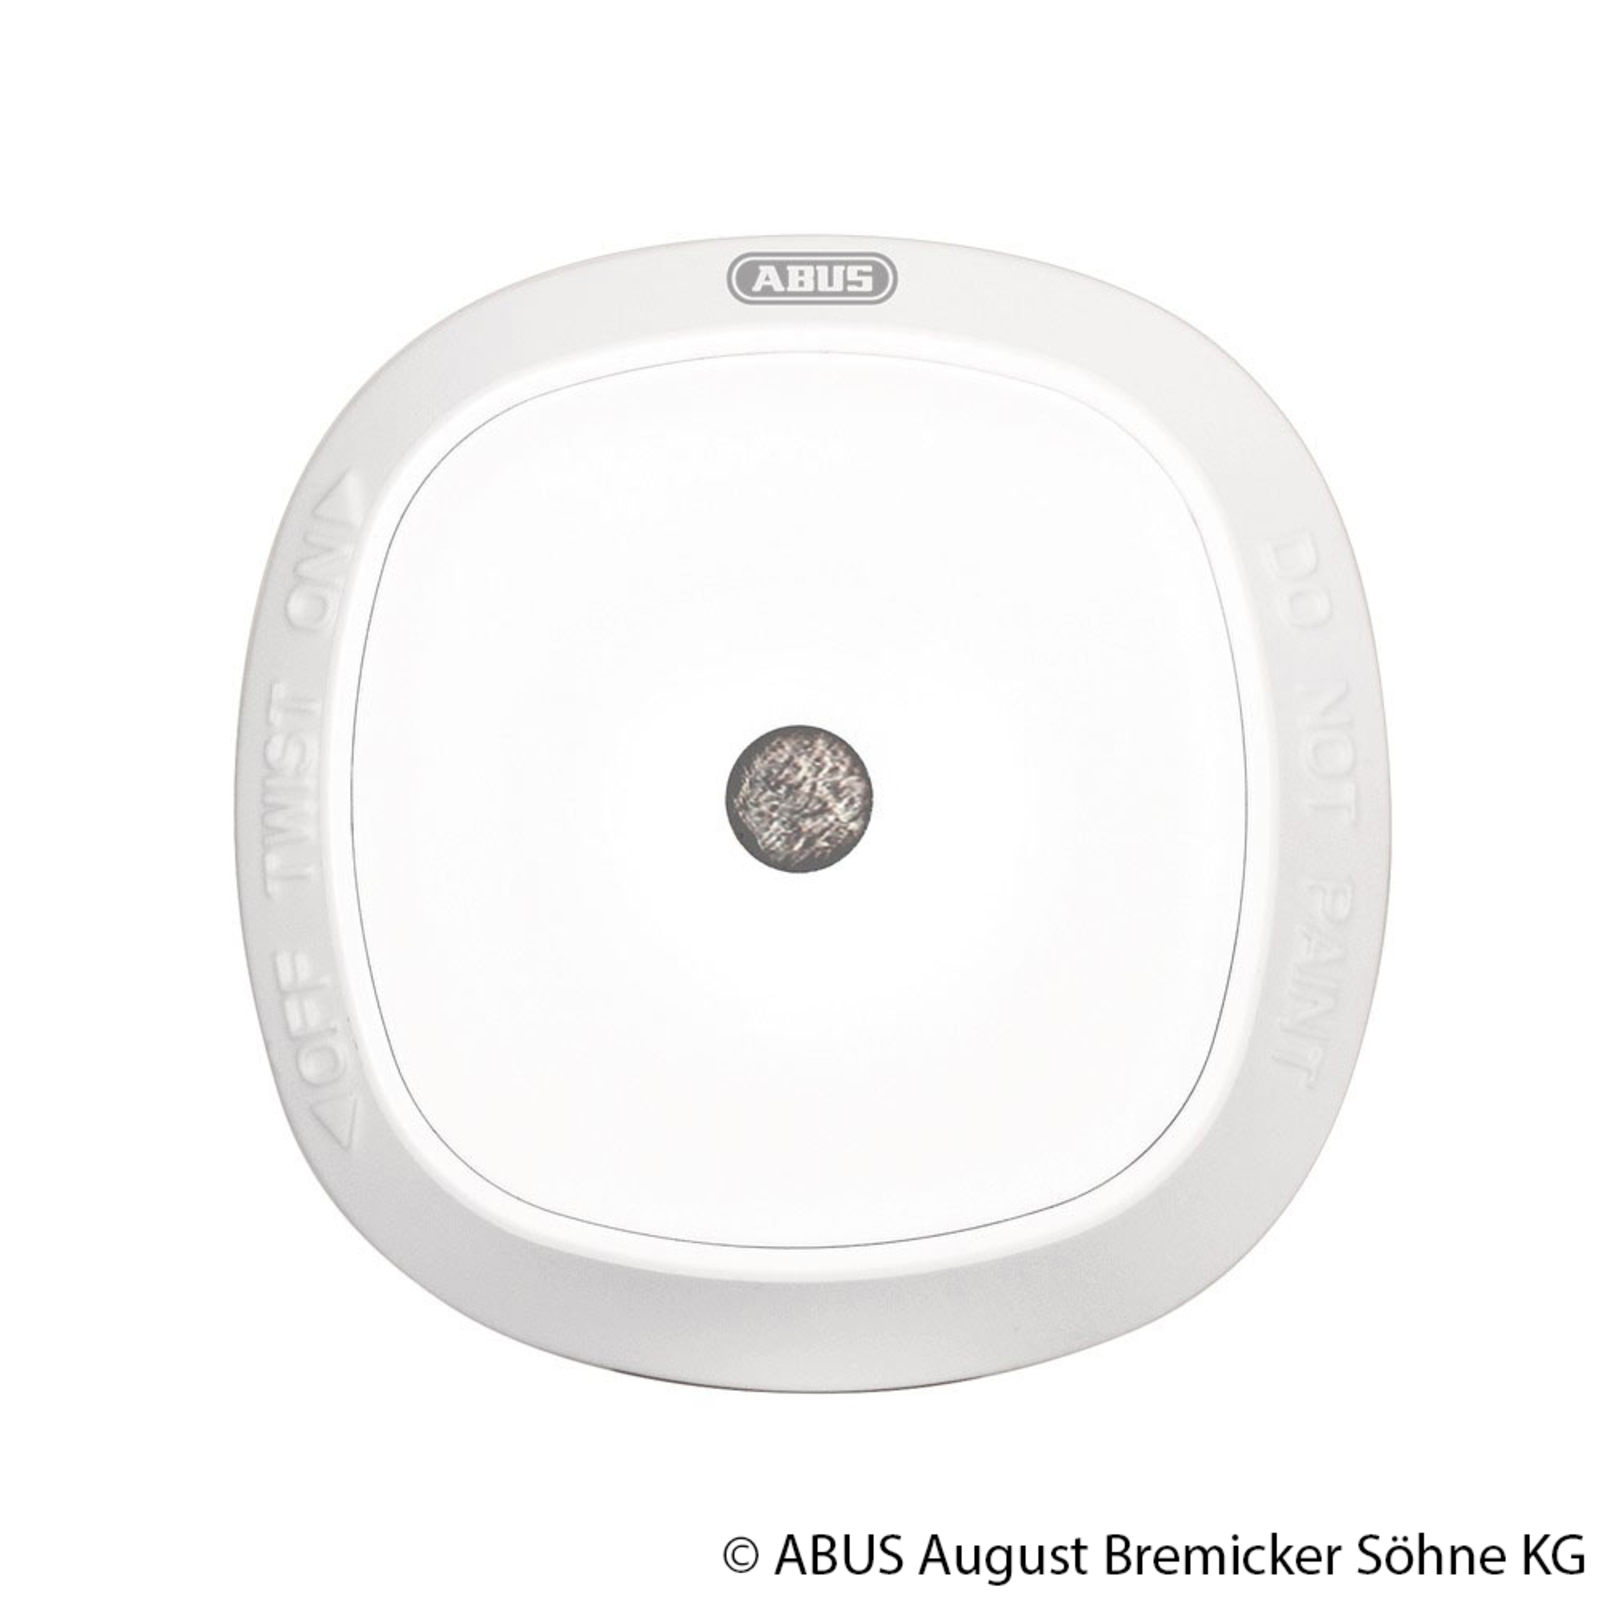 ABUS Z-Wave wireless smoke detector